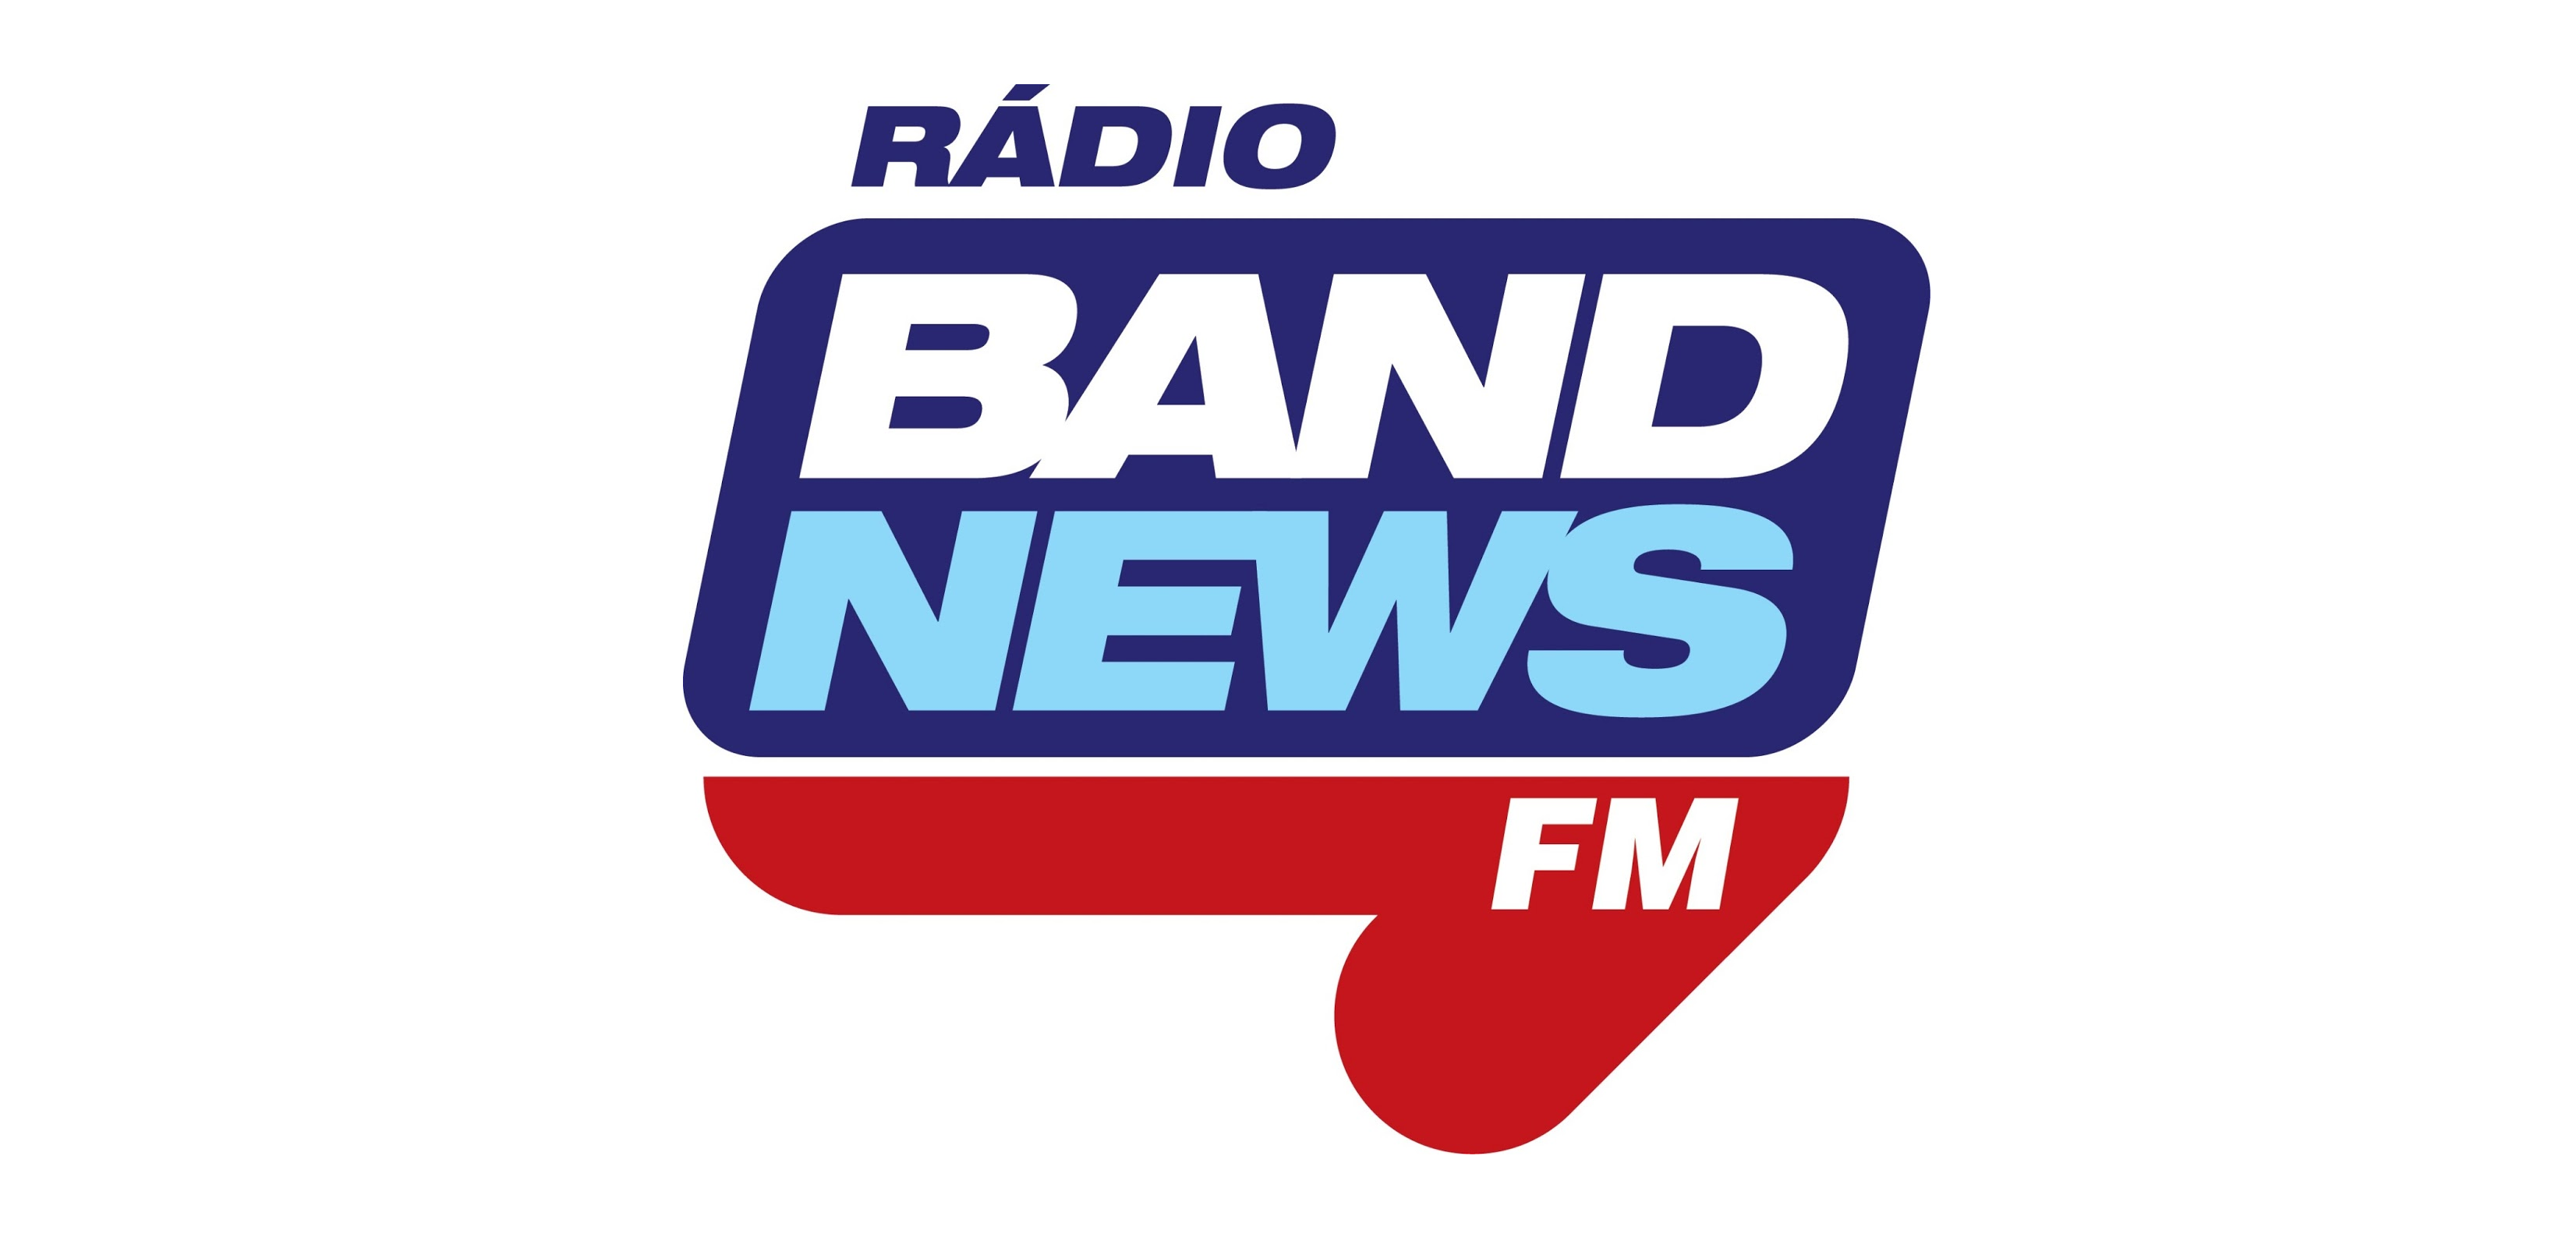 BandNews FM amplia rede e chega a Maringá em novo formato